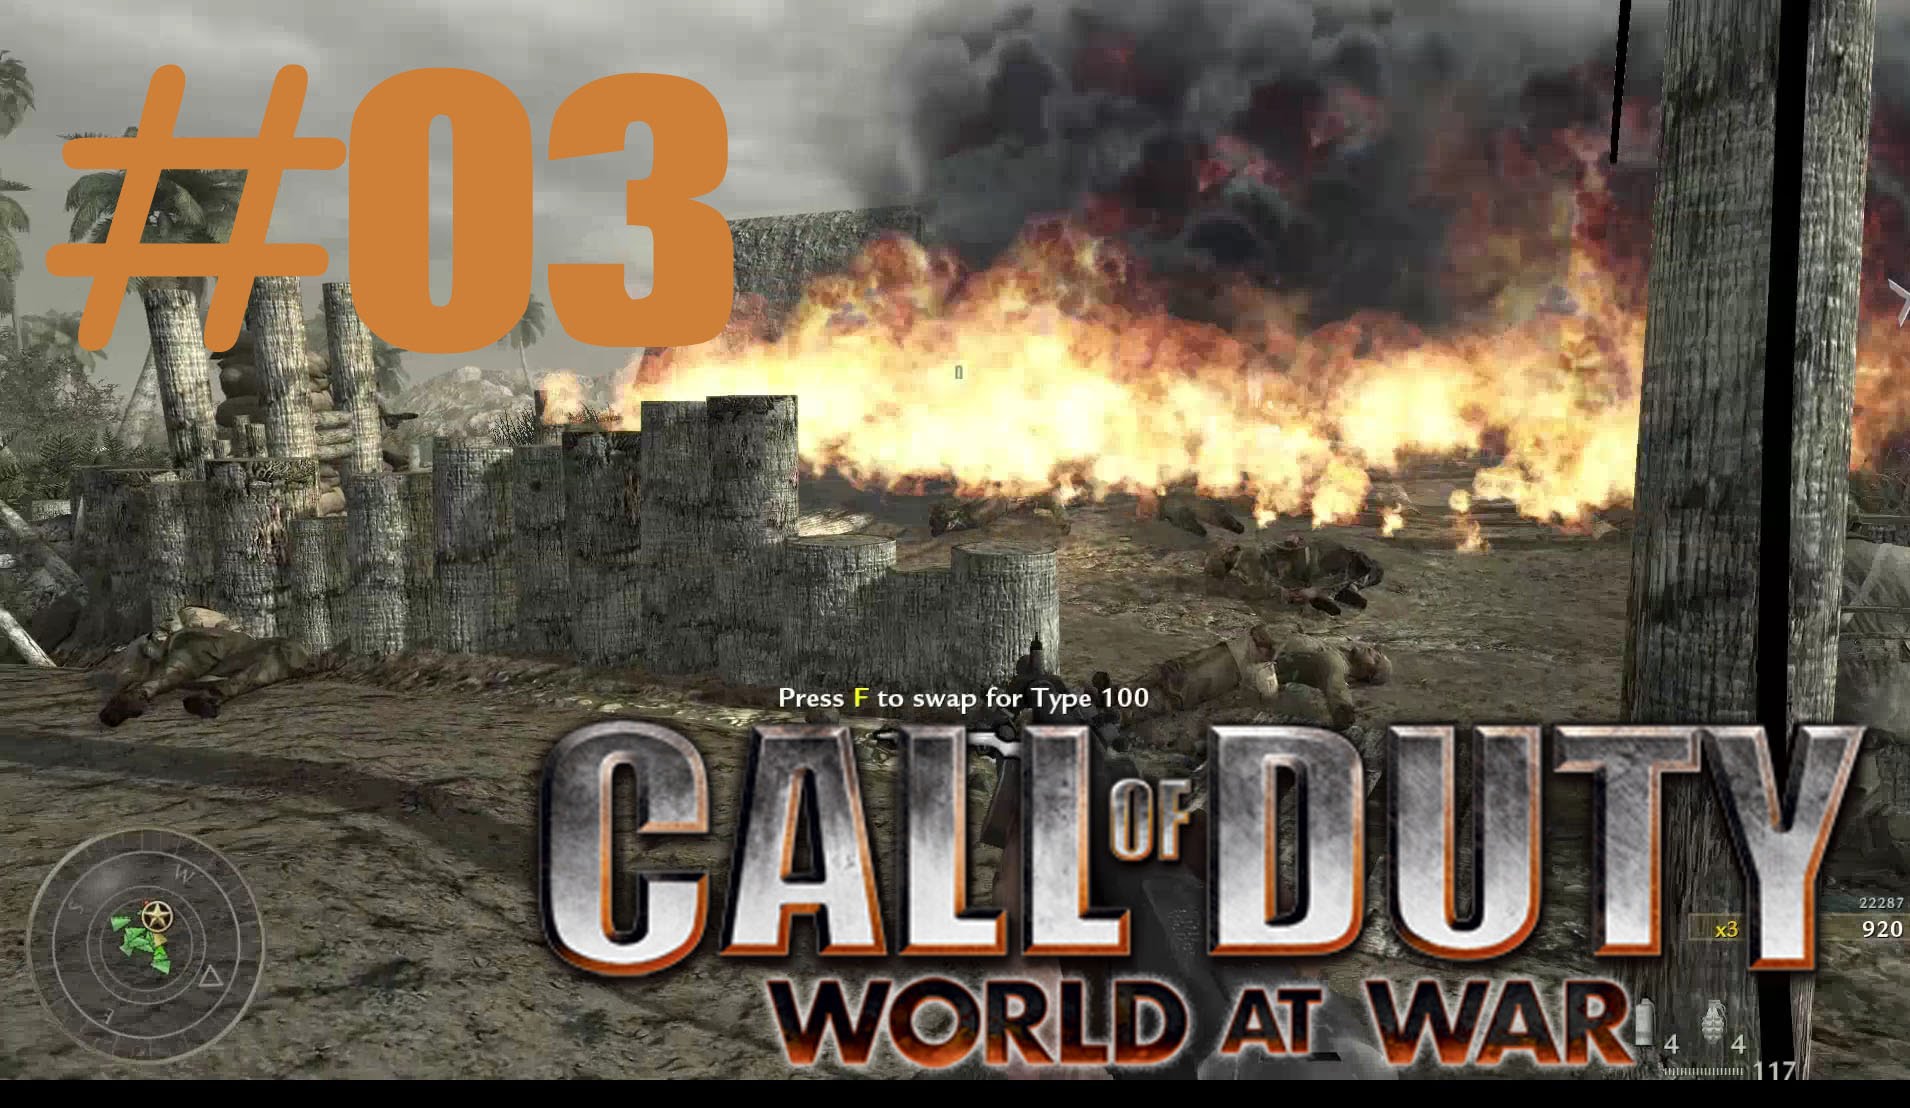 World at War #3 (Co-op w/ DJgoonnet)